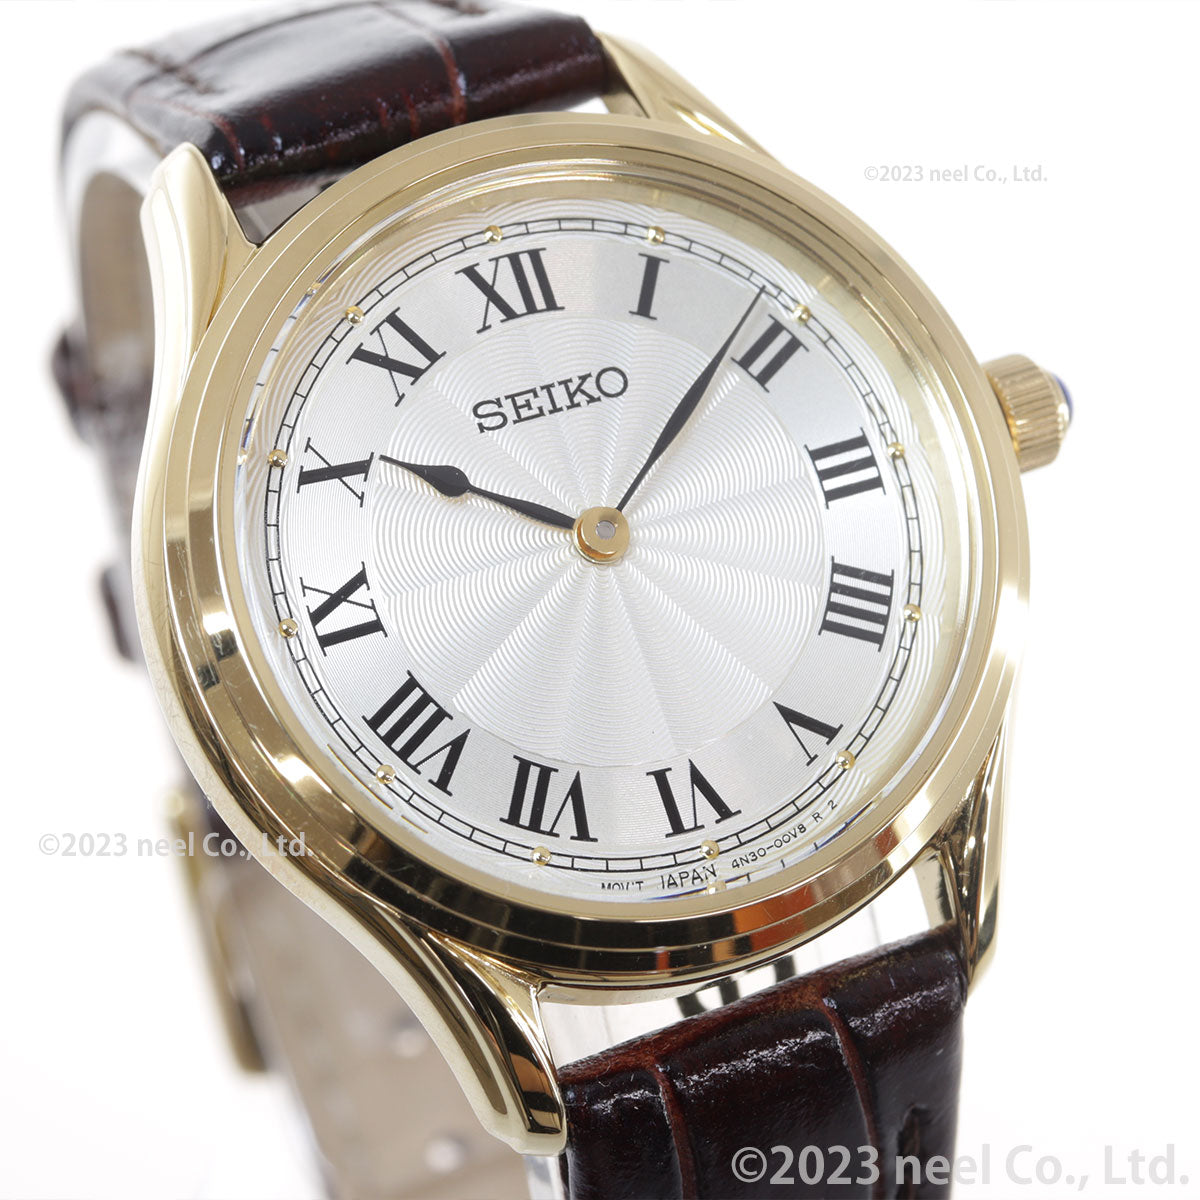 セイコー セレクション SEIKO SELECTION 流通限定モデル 腕時計 レディース ナノ・ユニバース nano・universe SSEH014